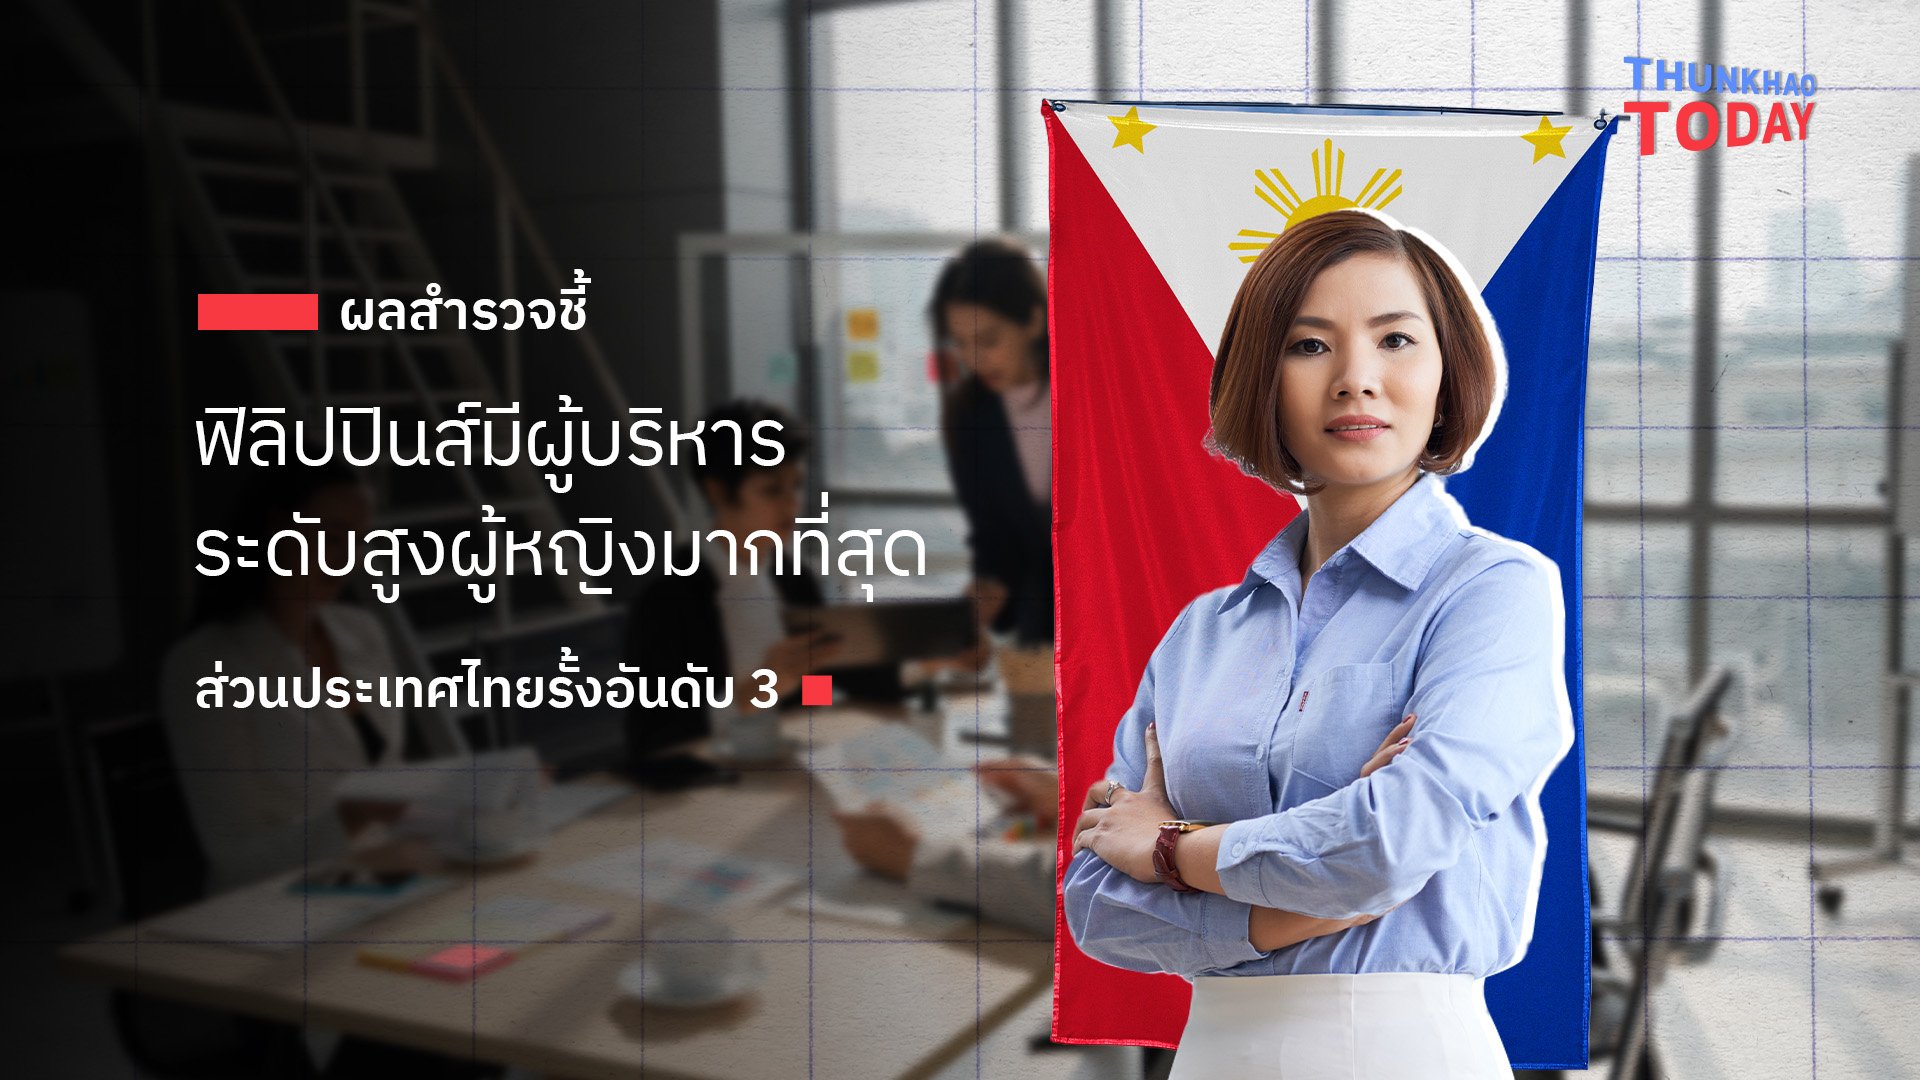 ผลสำรวจชี้ ฟิลิปปินส์มีผู้บริหารระดับสูงผู้หญิงมากที่สุด ส่วนประเทศไทยรั้งอันดับ 3